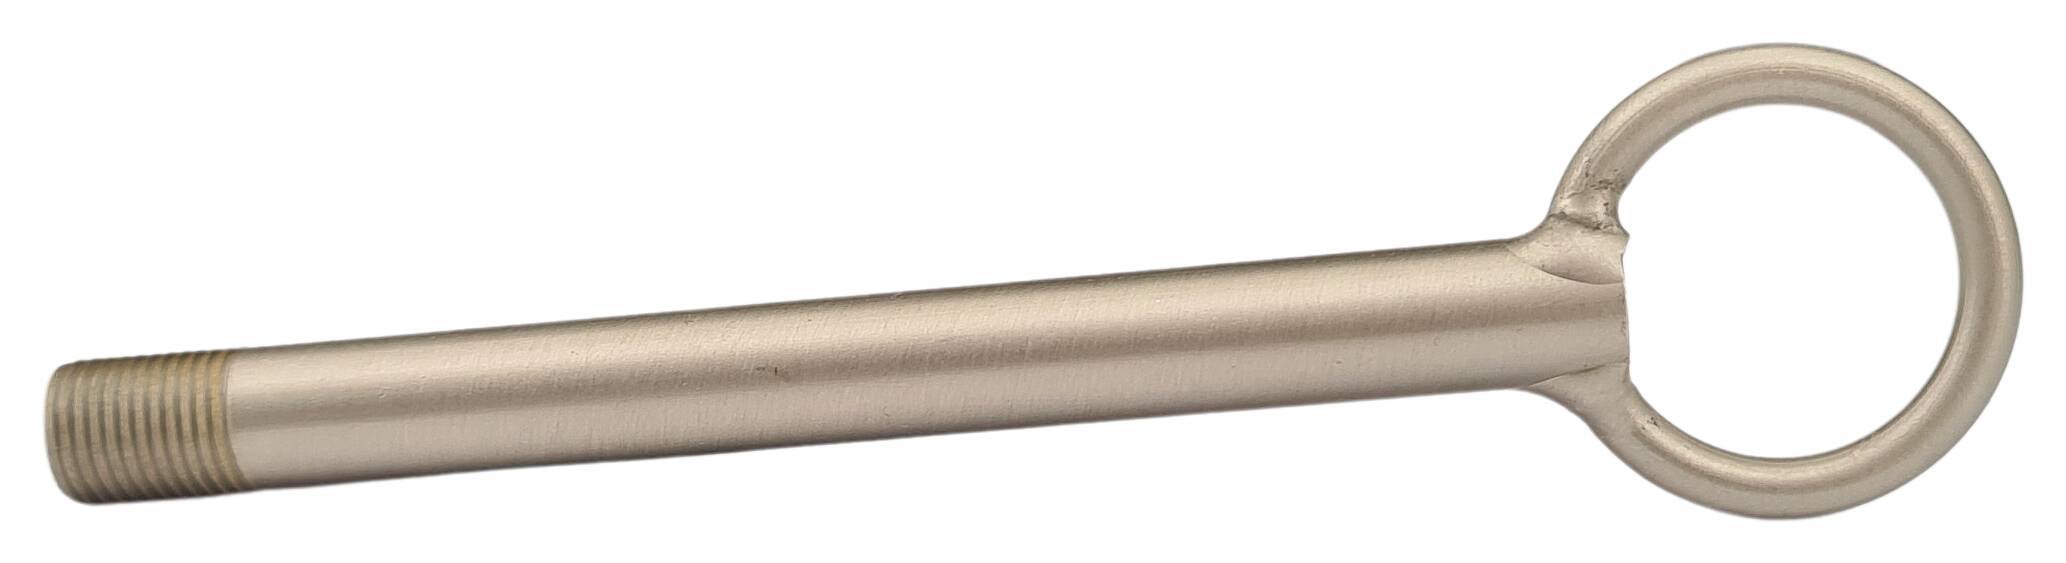 Aufhängerohr m. Ring Aussenmaße 30x125 gelötet (stabile Ausführung) nickel-matt